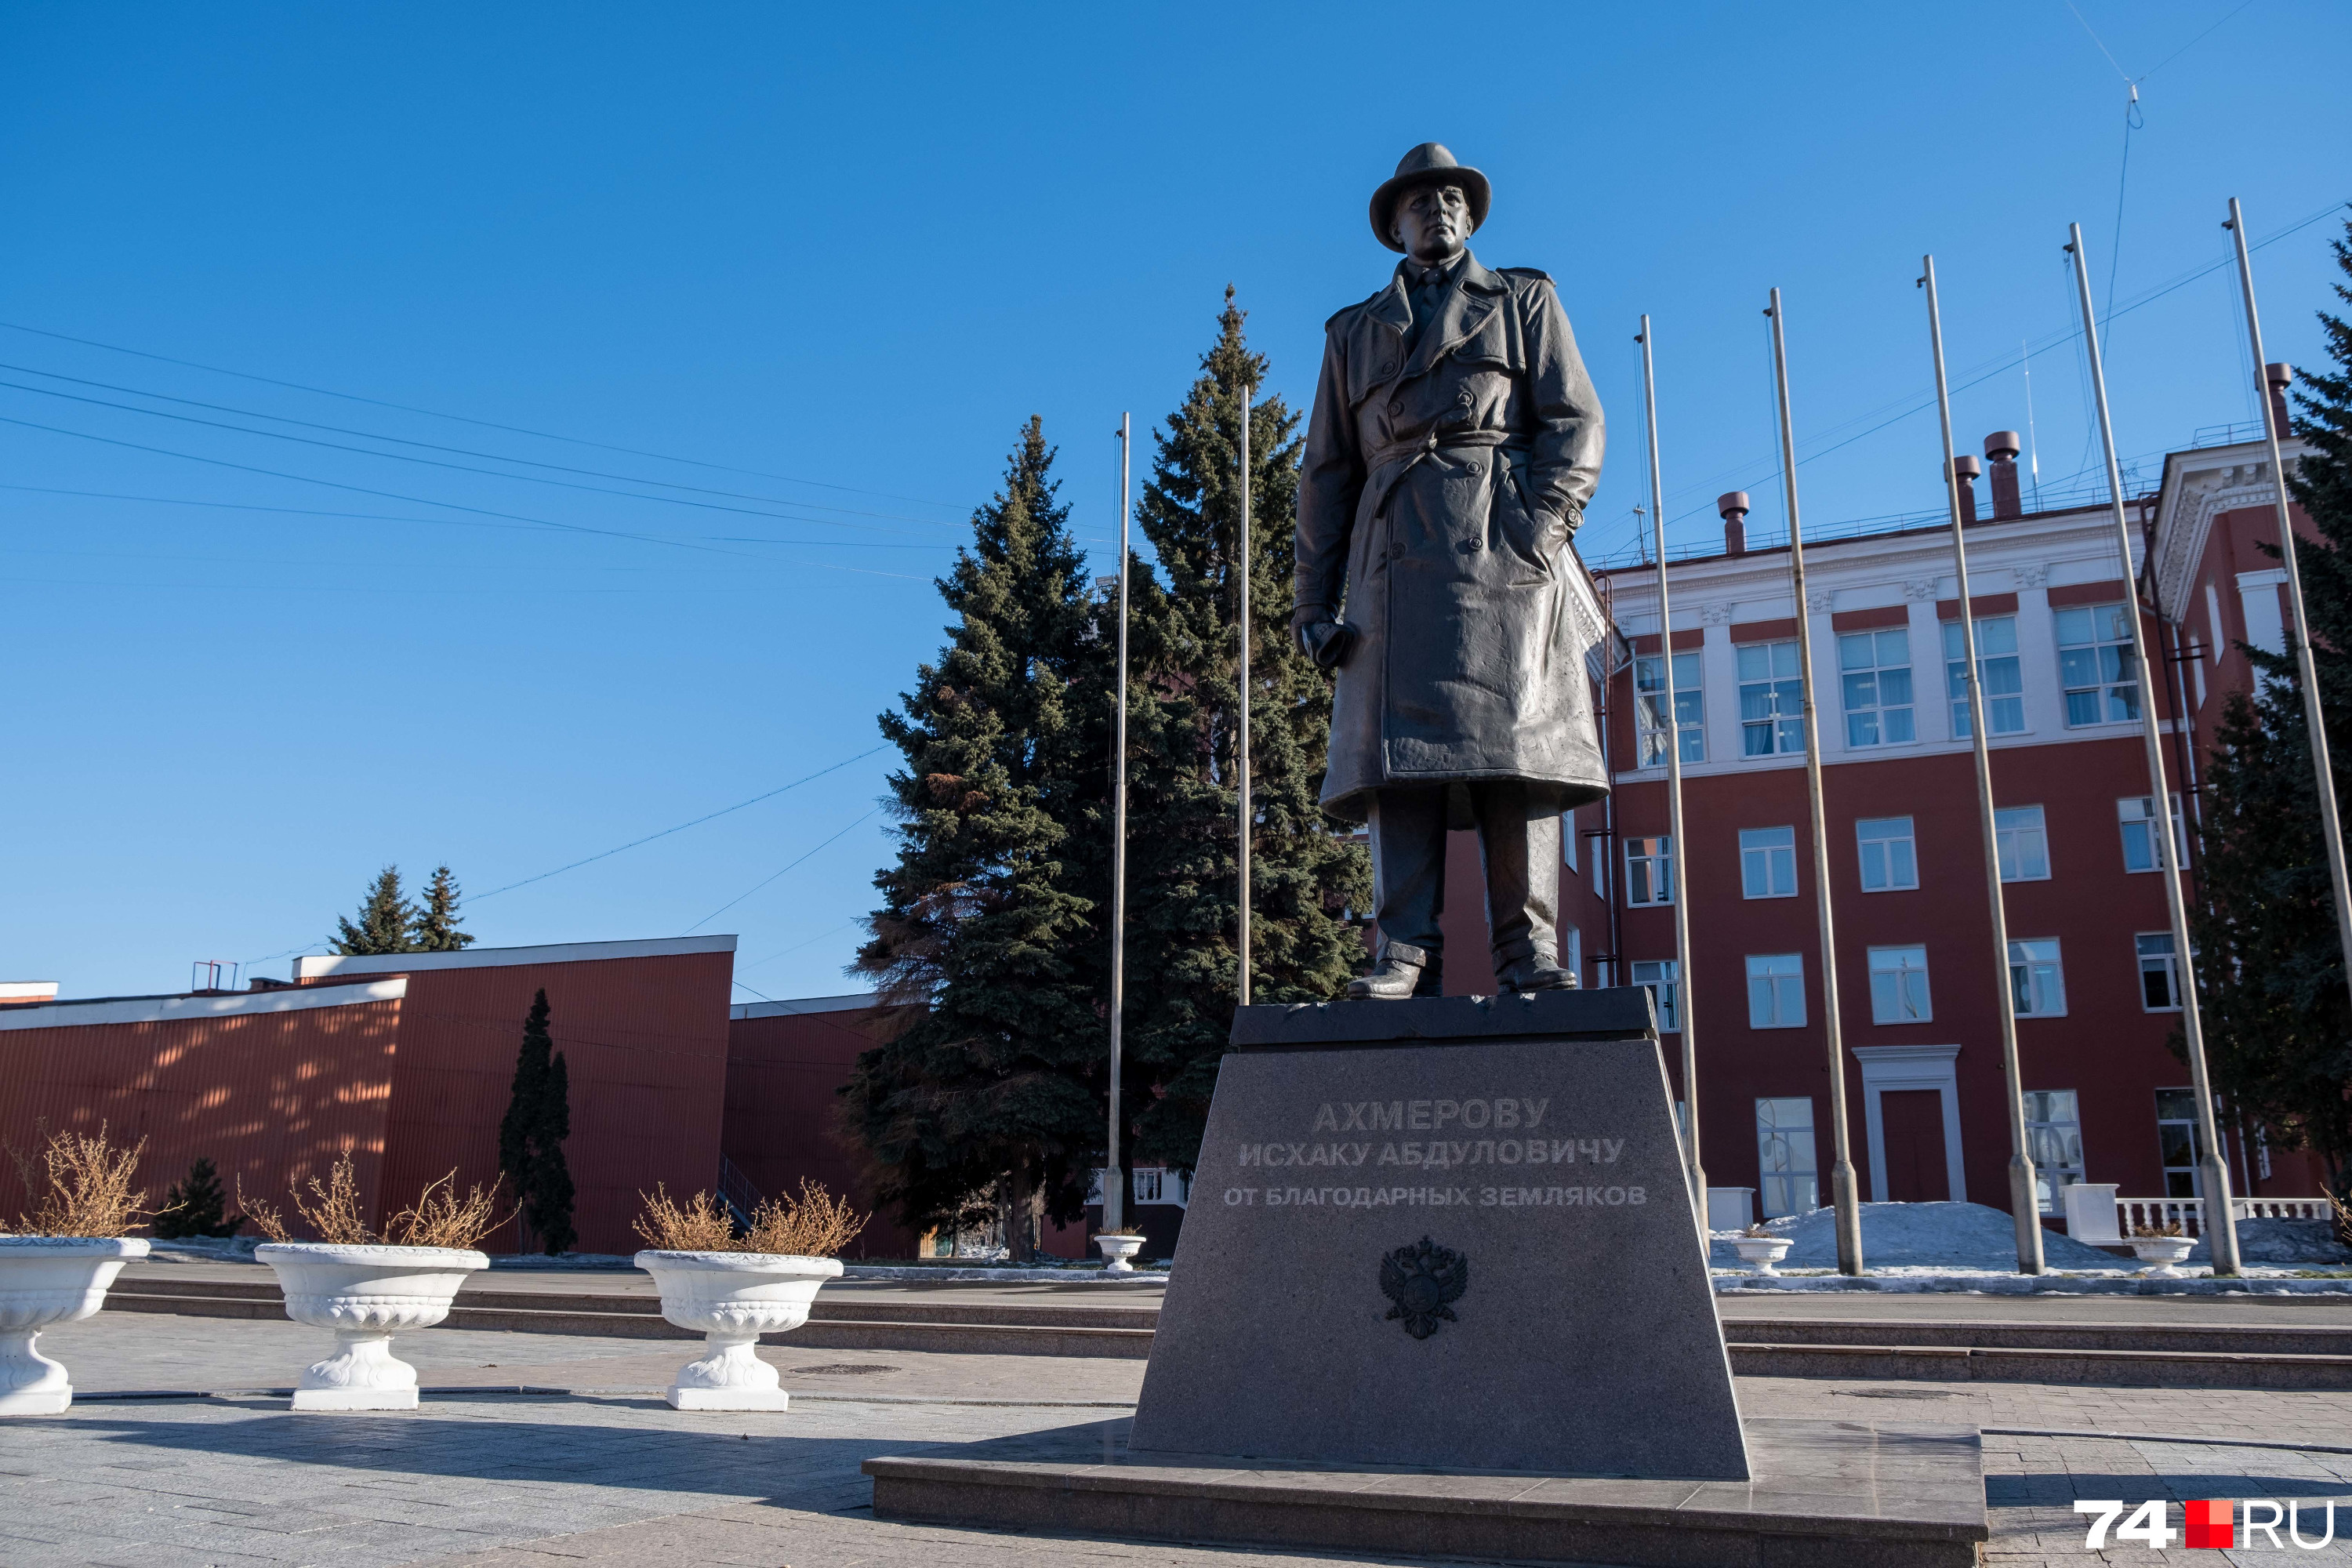 Памятник Ахмерову в Челябинске открывали с размахом, но спустя шесть лет о нем мало кто помнит